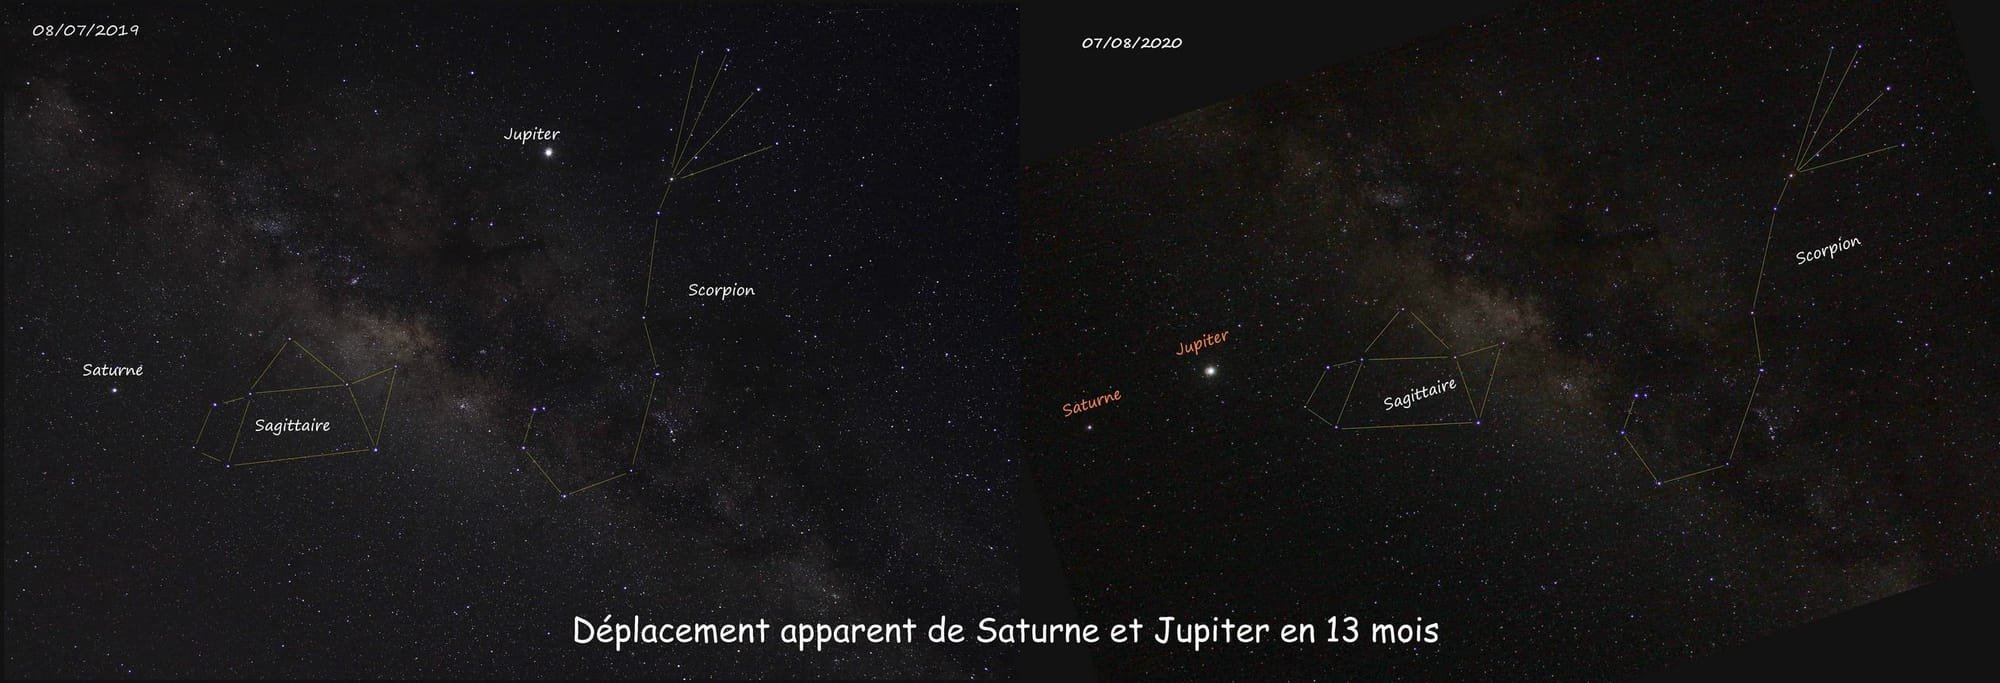 Déplacement apparent de Saturne et Jupiter - crédit : SP